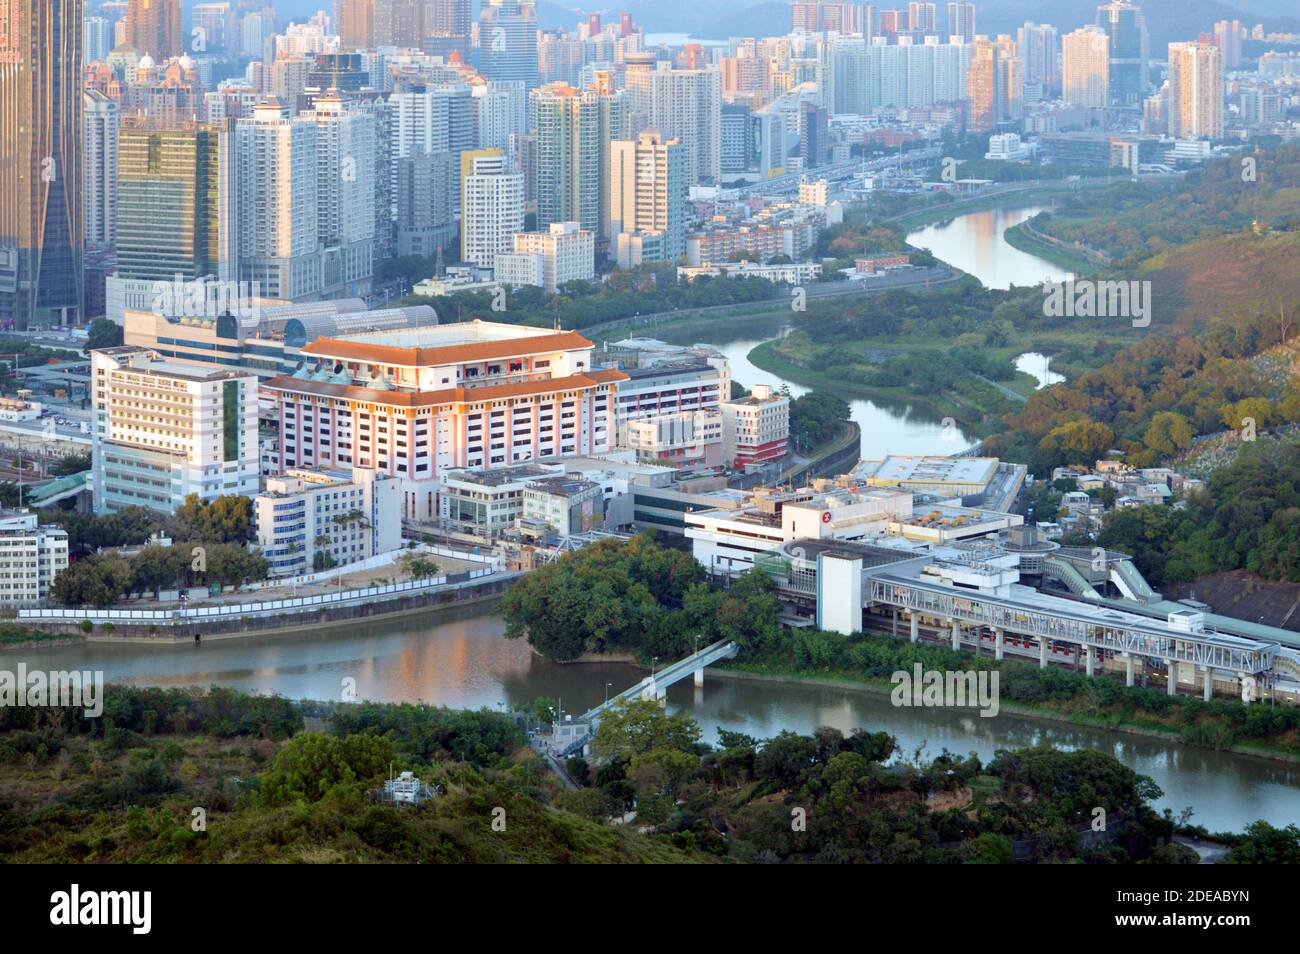 Frontière entre Shenzhen, Chine (gauche) et Hong Kong (droite), avec le point de contrôle Lo Wu illustré. La limite est la rivière Sam Chun (centre). Banque D'Images